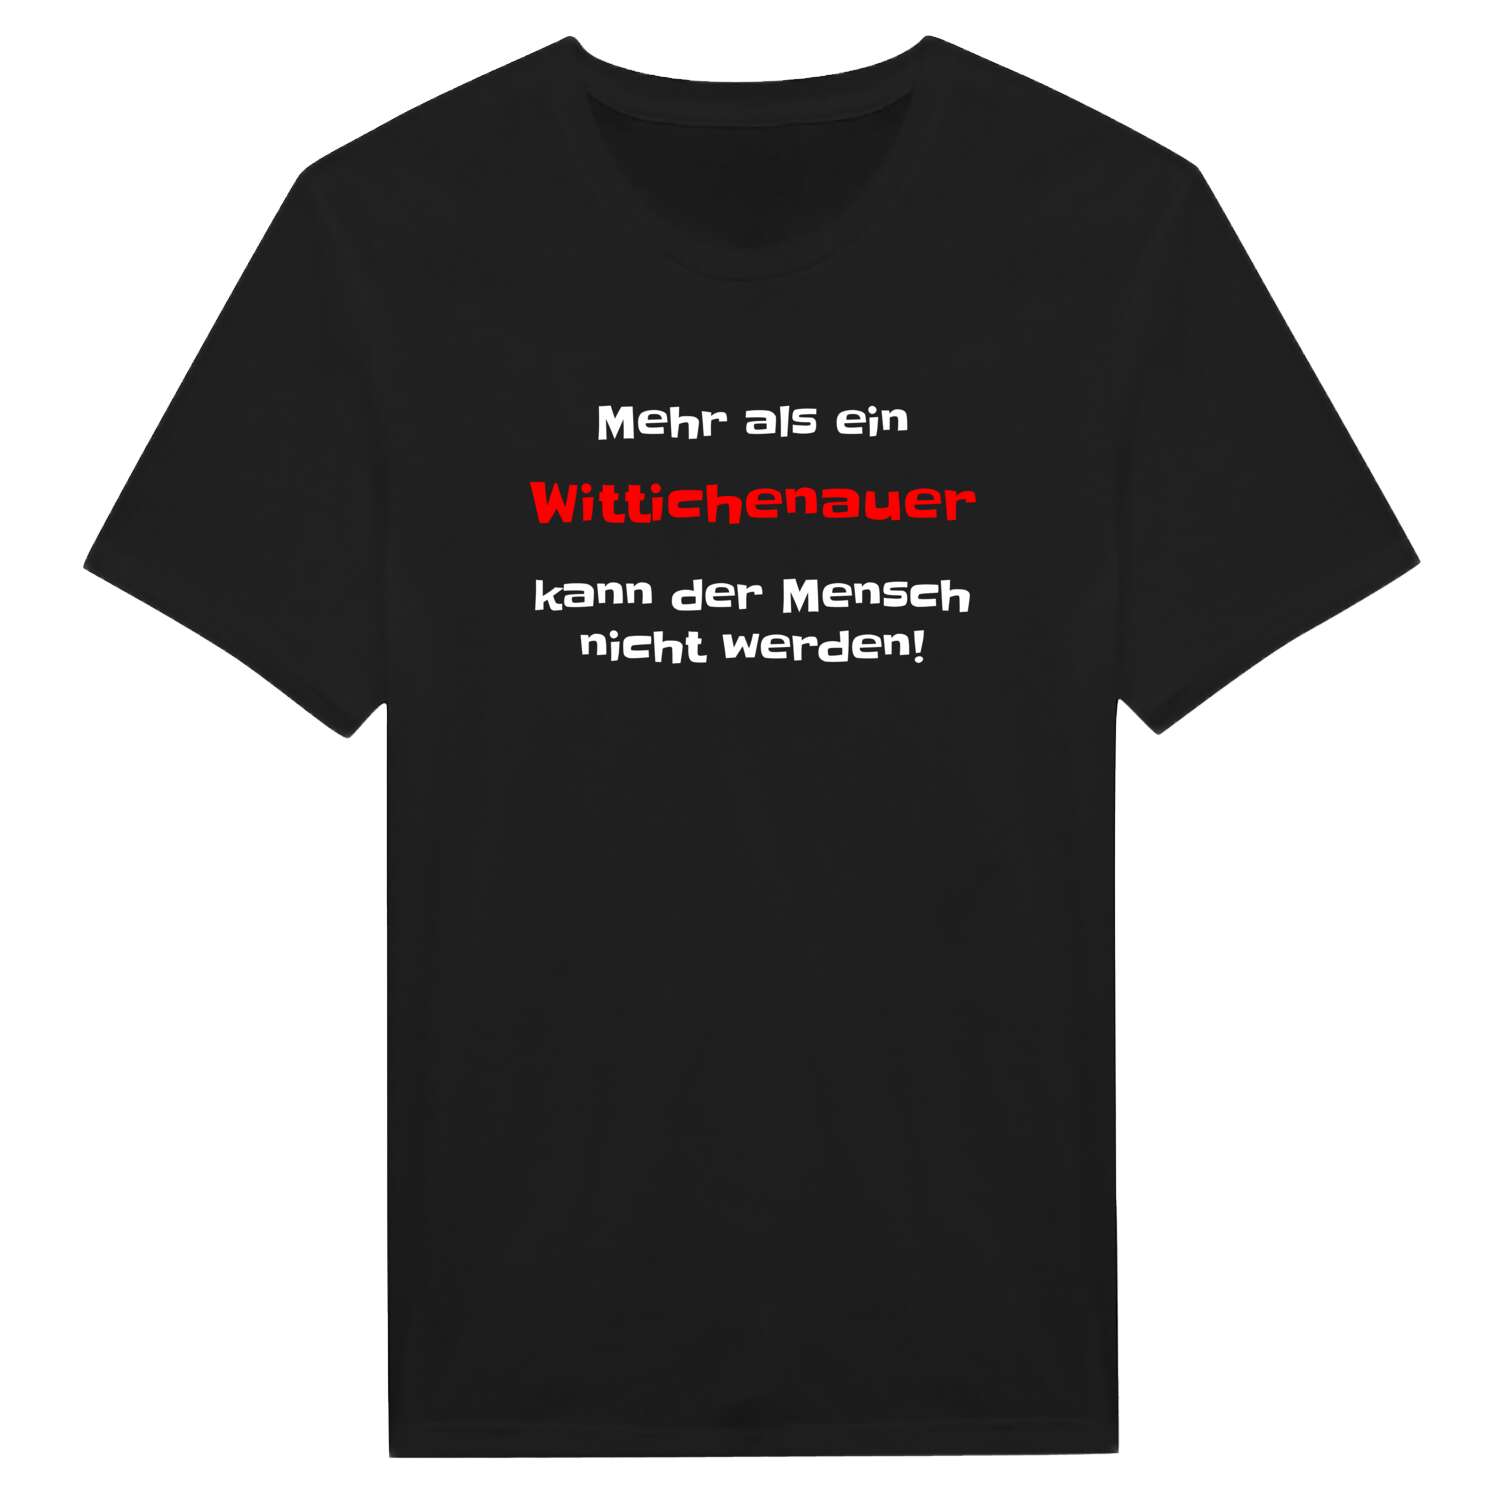 Wittichenau T-Shirt »Mehr als ein«